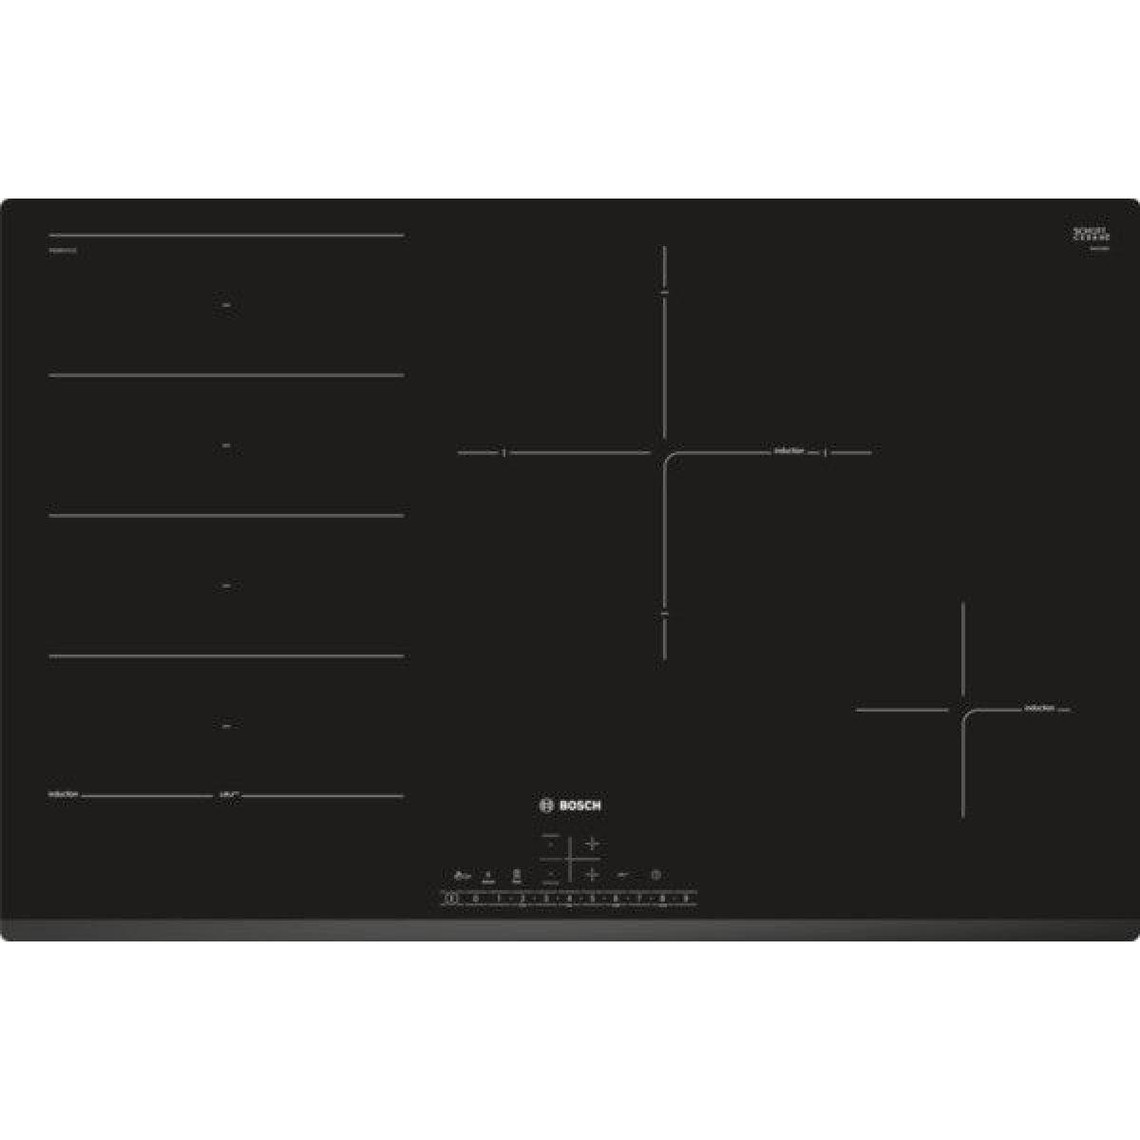 Bosch Table de cuisson à induction 80cm 4 feux 7400w flexinduction noir - pxe831fc1e - BOSCH